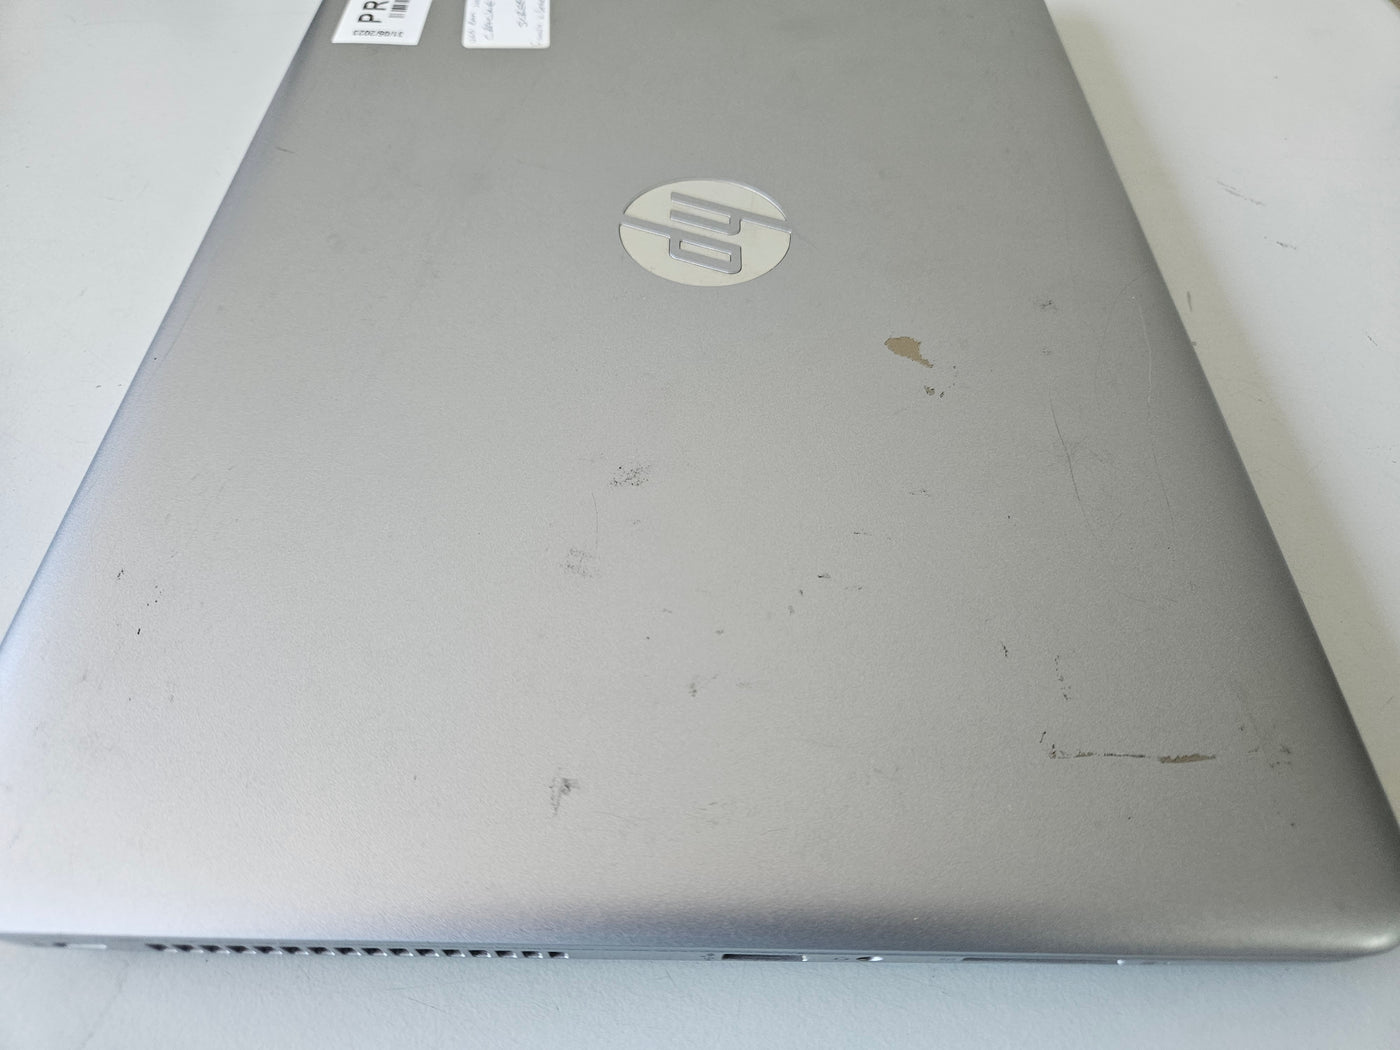 HP ProBook 430 G 240GB SSD 4GB RAM i5-7200U 2.71GHz NO OS Laptop JOBLOT OF 2 ( Y7Z43ET#ABU ) SPR